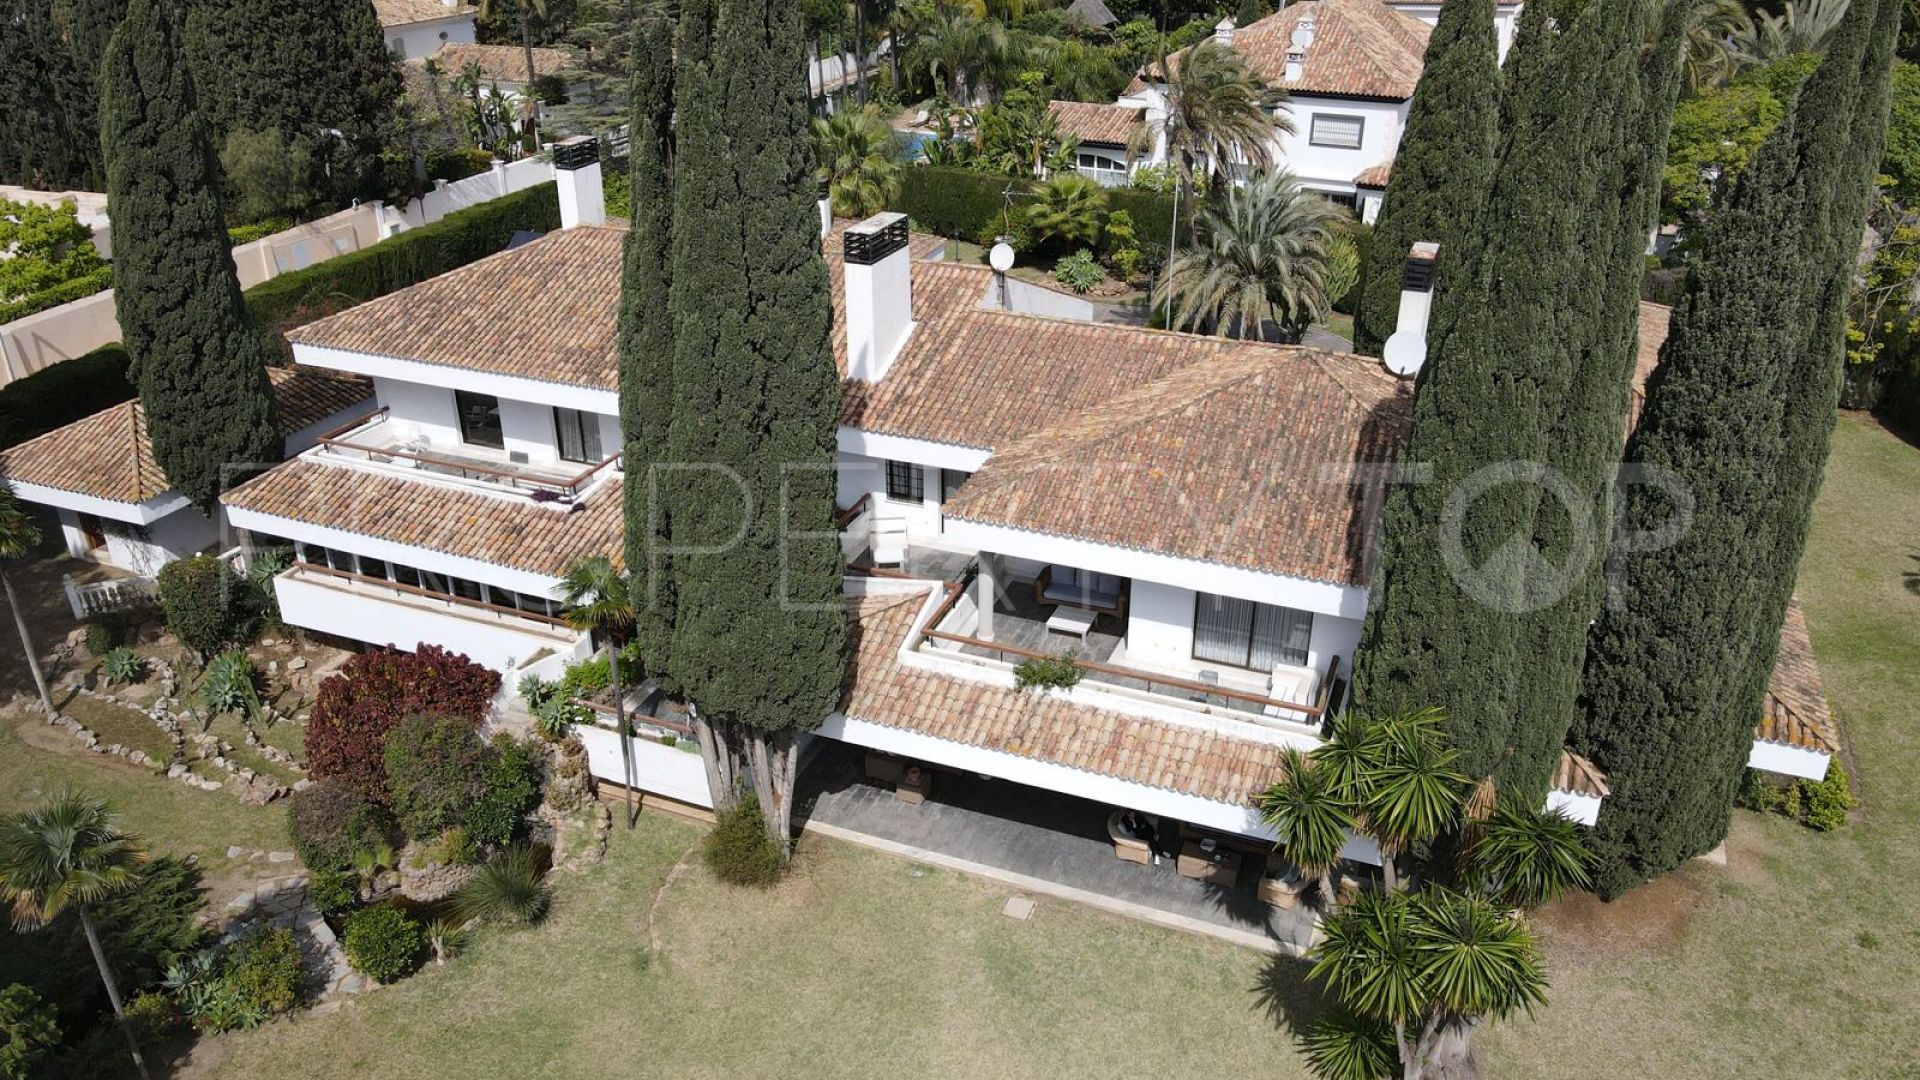 For sale villa in Guadalmina Baja